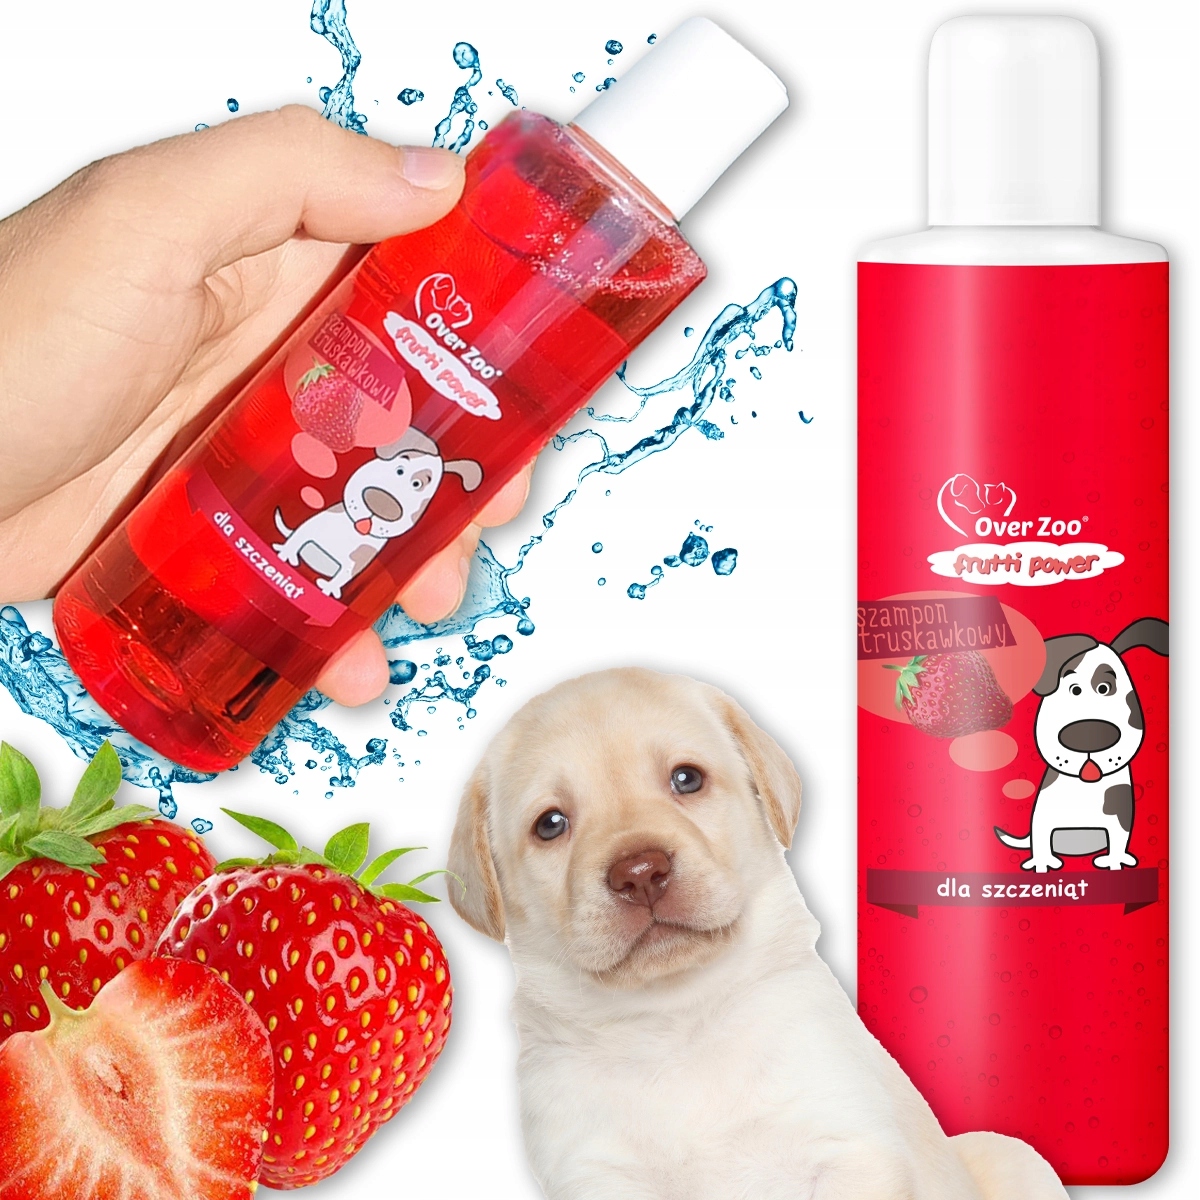 szampon dla psa dogomania